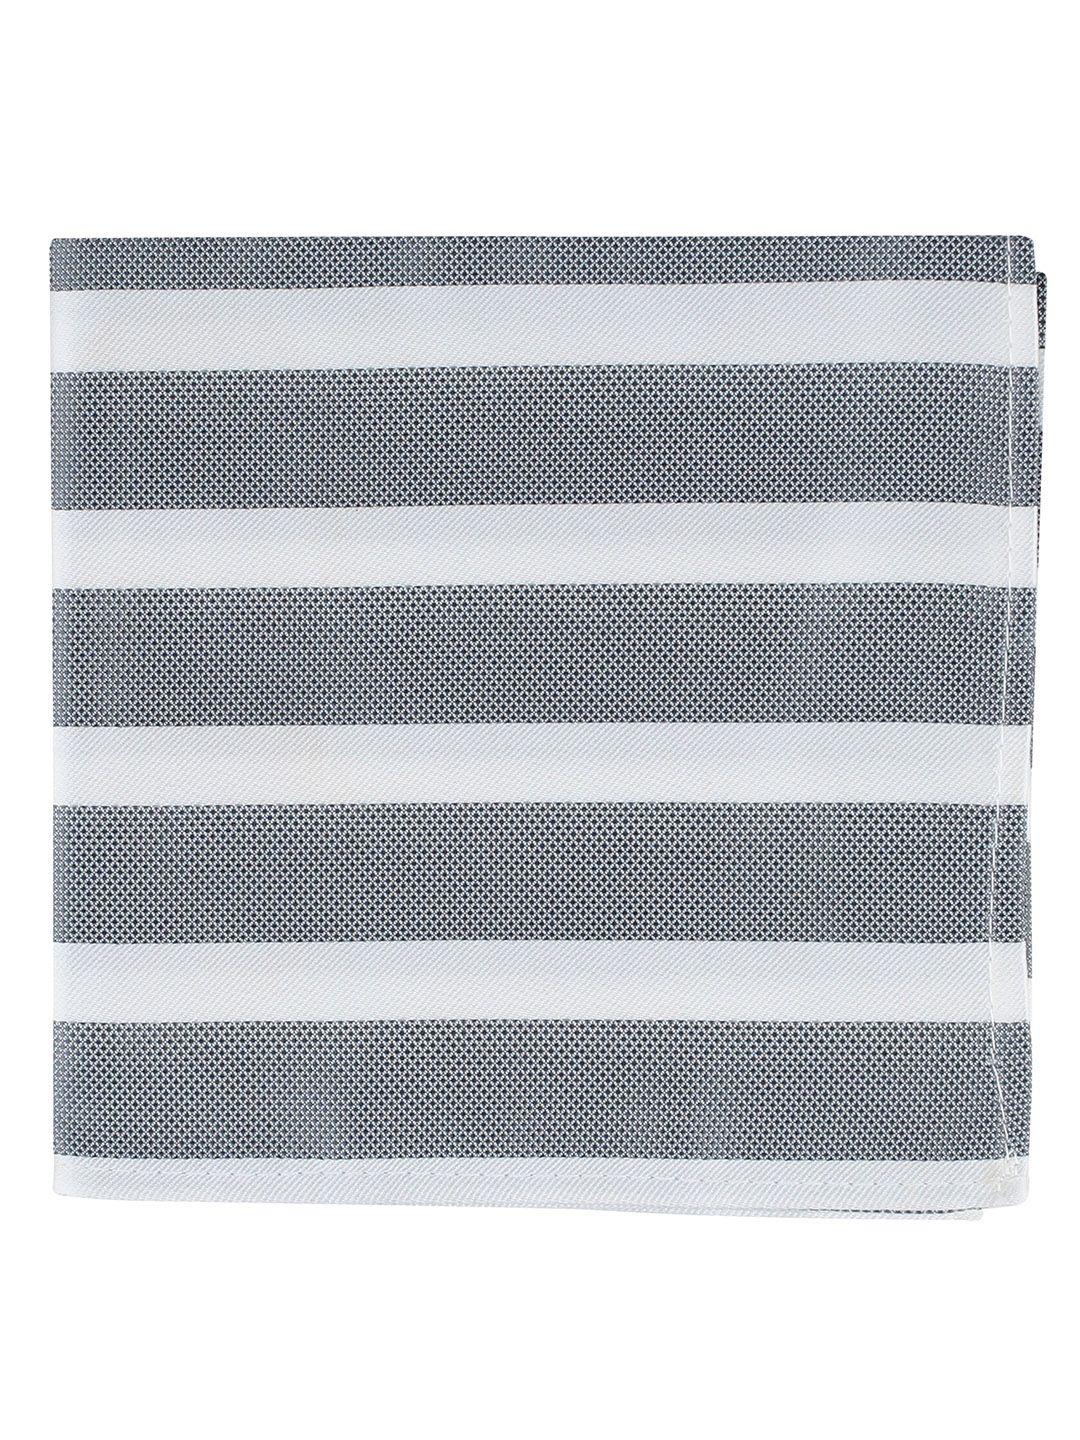 kovove men grey & white striped pocket square